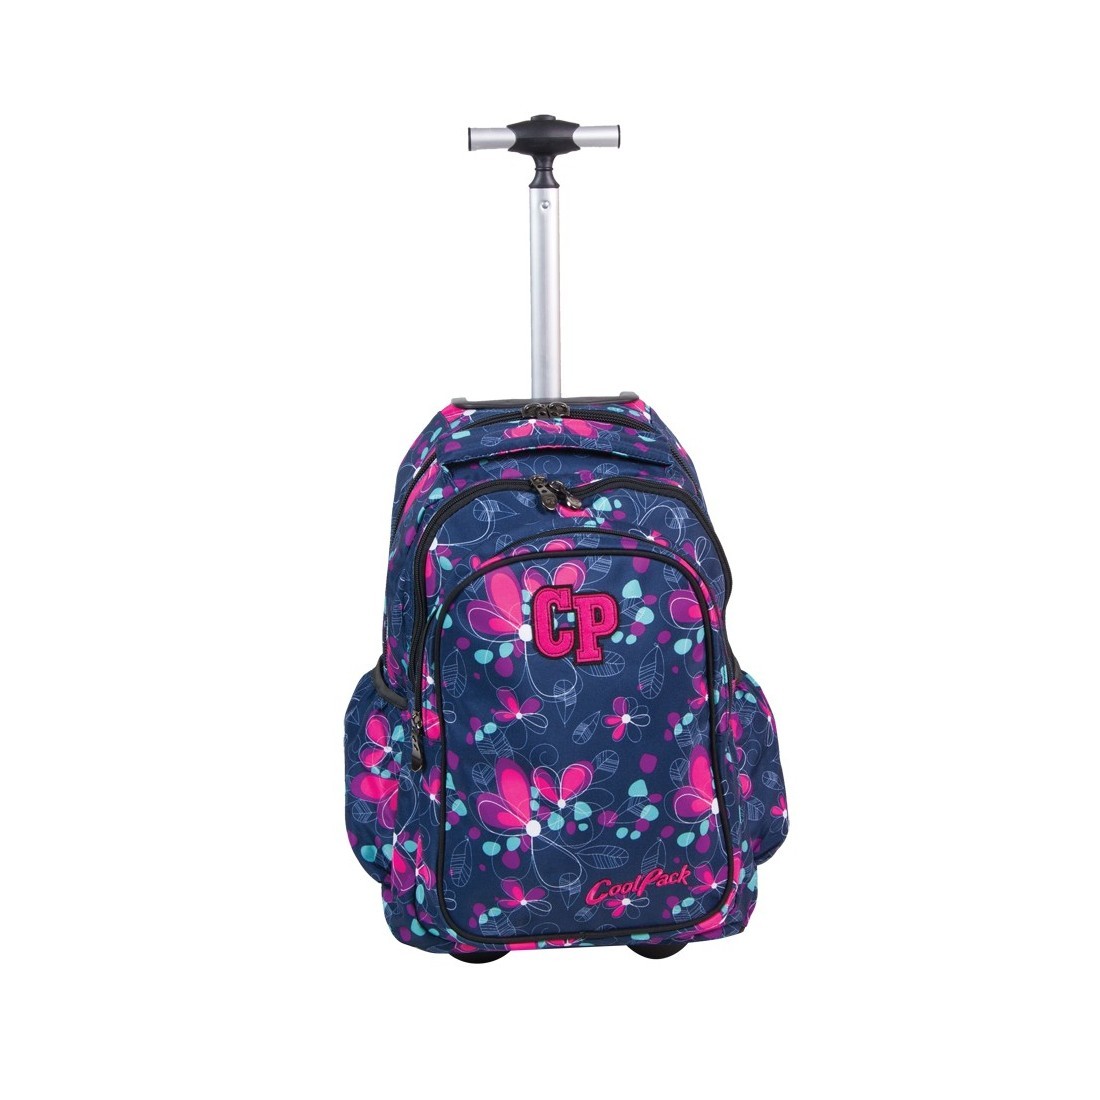 Plecak CoolPack na kółkach dla dziewczynki w kwiatki - JUNIOR NIGHT MEADOW CP 201 - plecak-tornister.pl